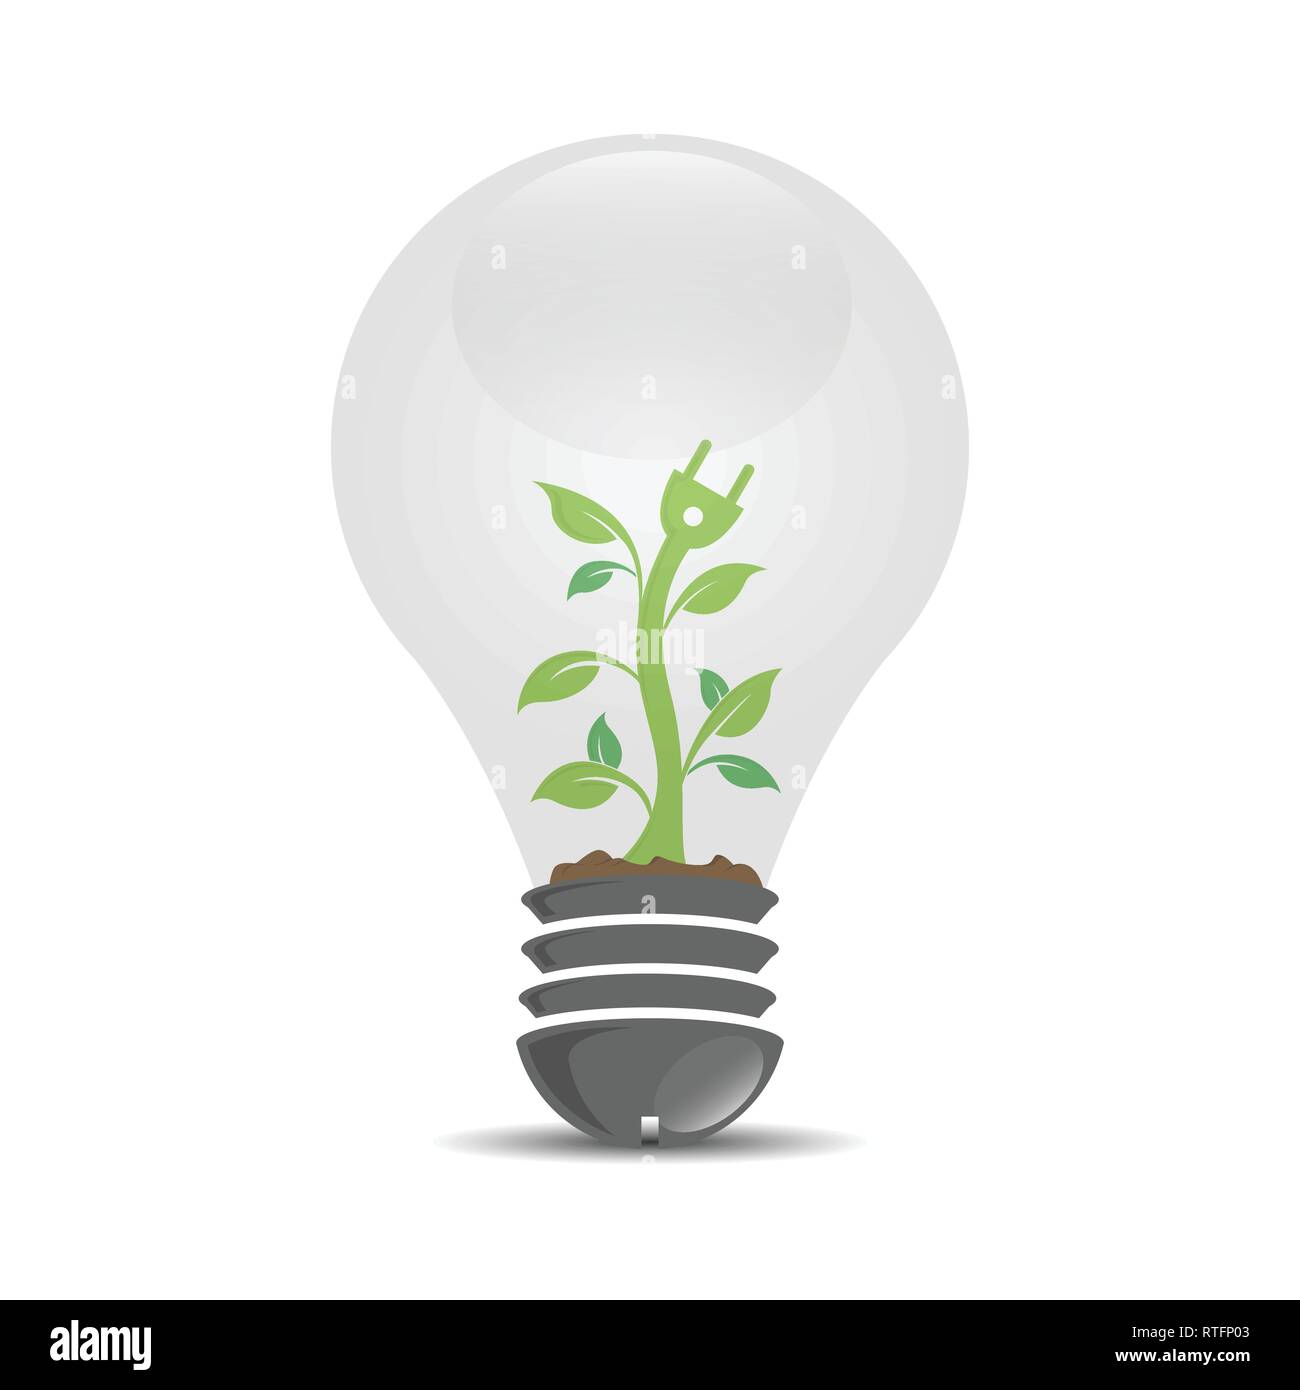 Realistische logo Vorlage mit der wachsenden inneren Glühbirne, Ökologie, Wachstum, Entwicklung Konzept Detail. Stock Vektor